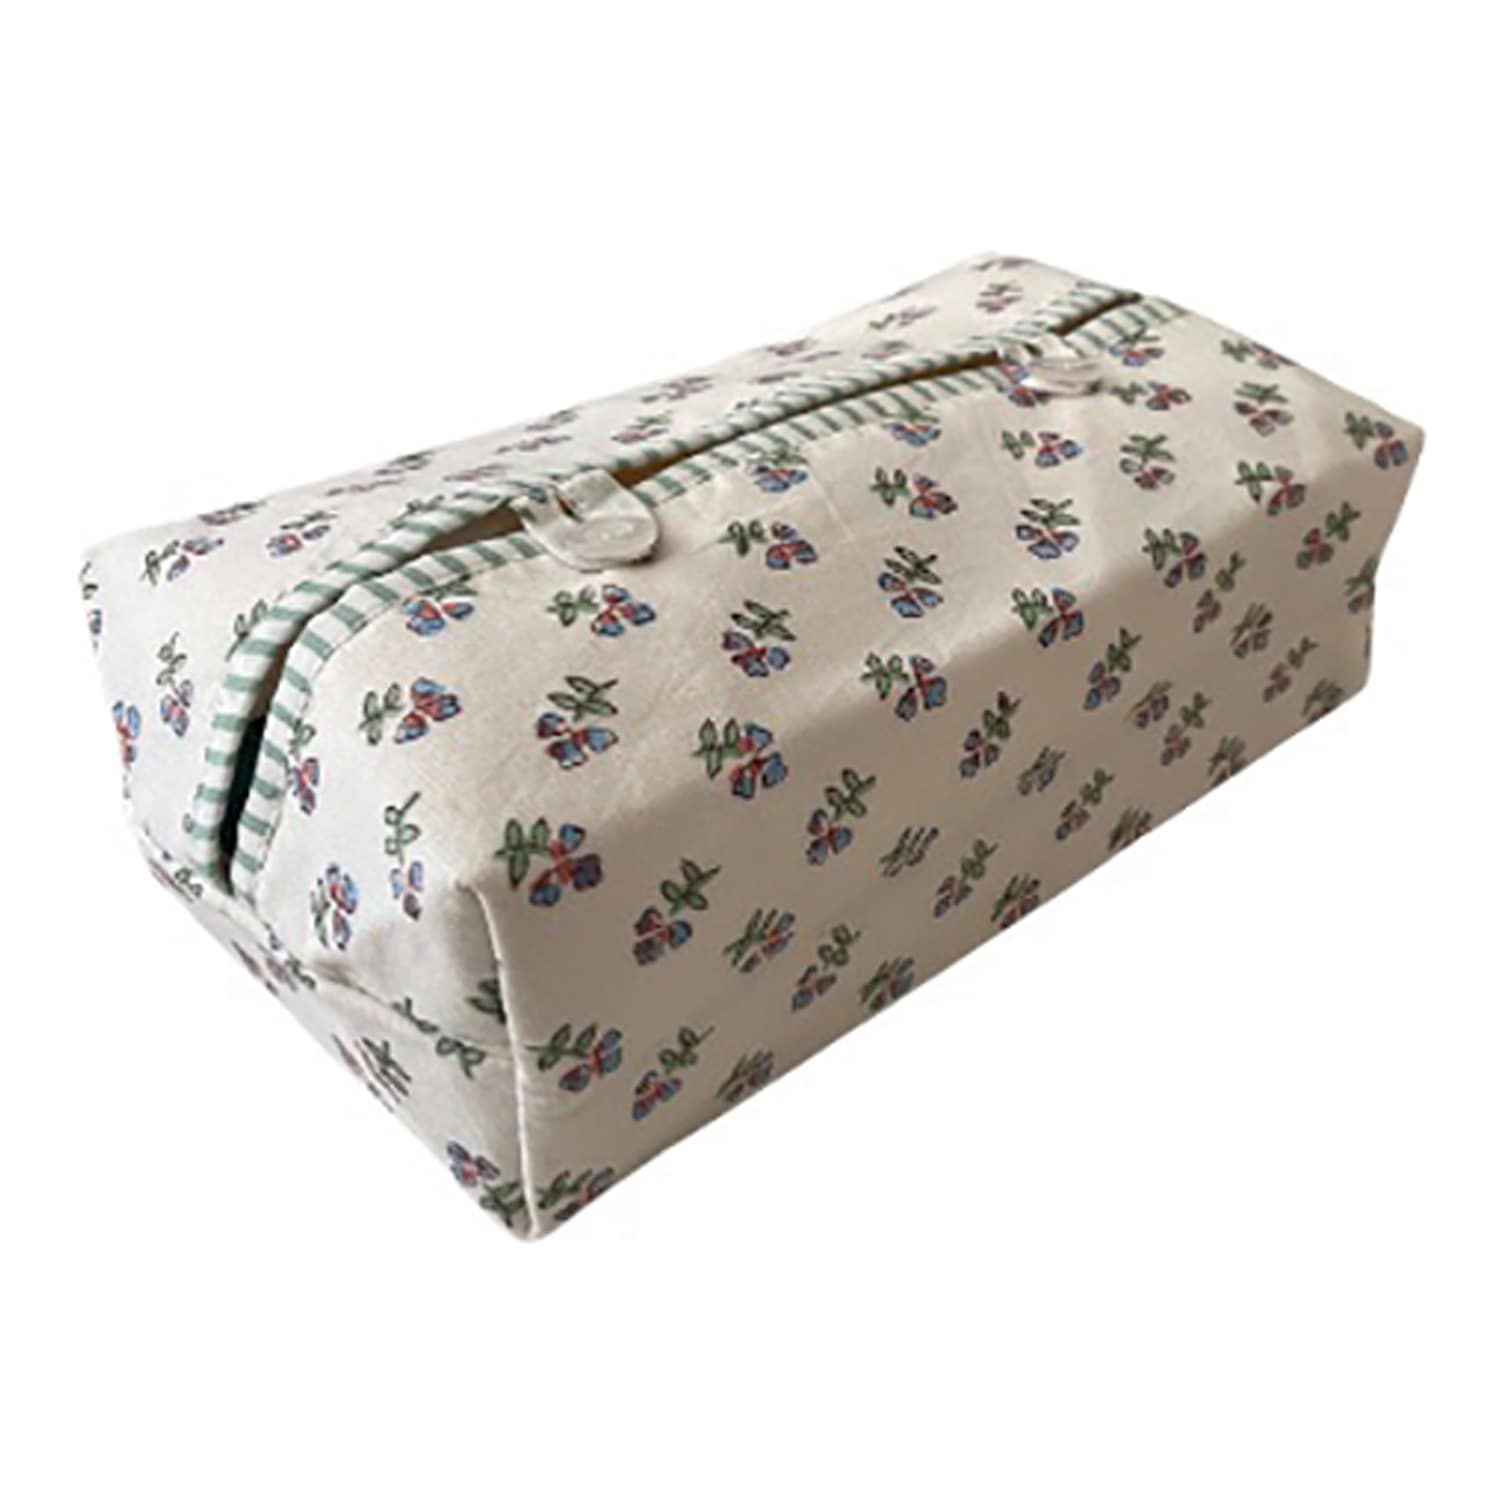 Multi Ditsy Fabric Tissue Box Cover